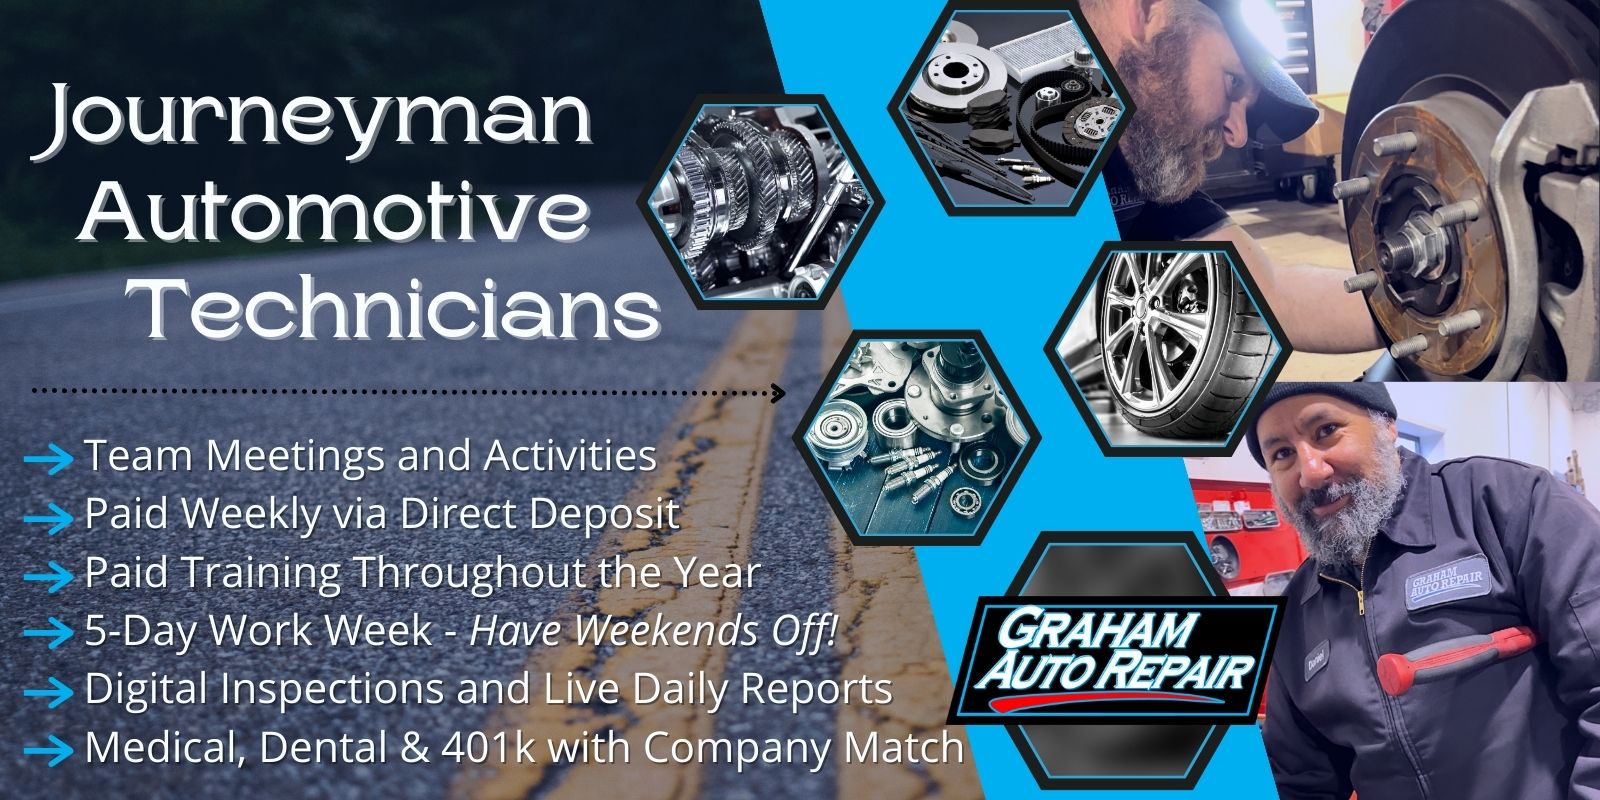 Journeyman Automotive Technician Job at Graham Auto Repair